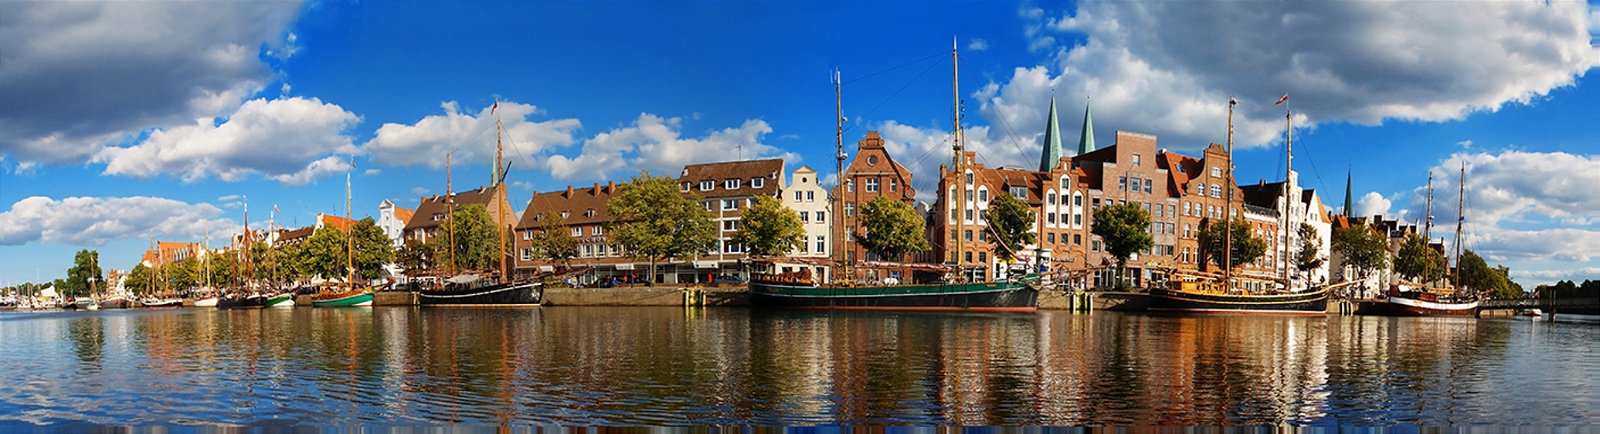 Städtereise nach Lübeck